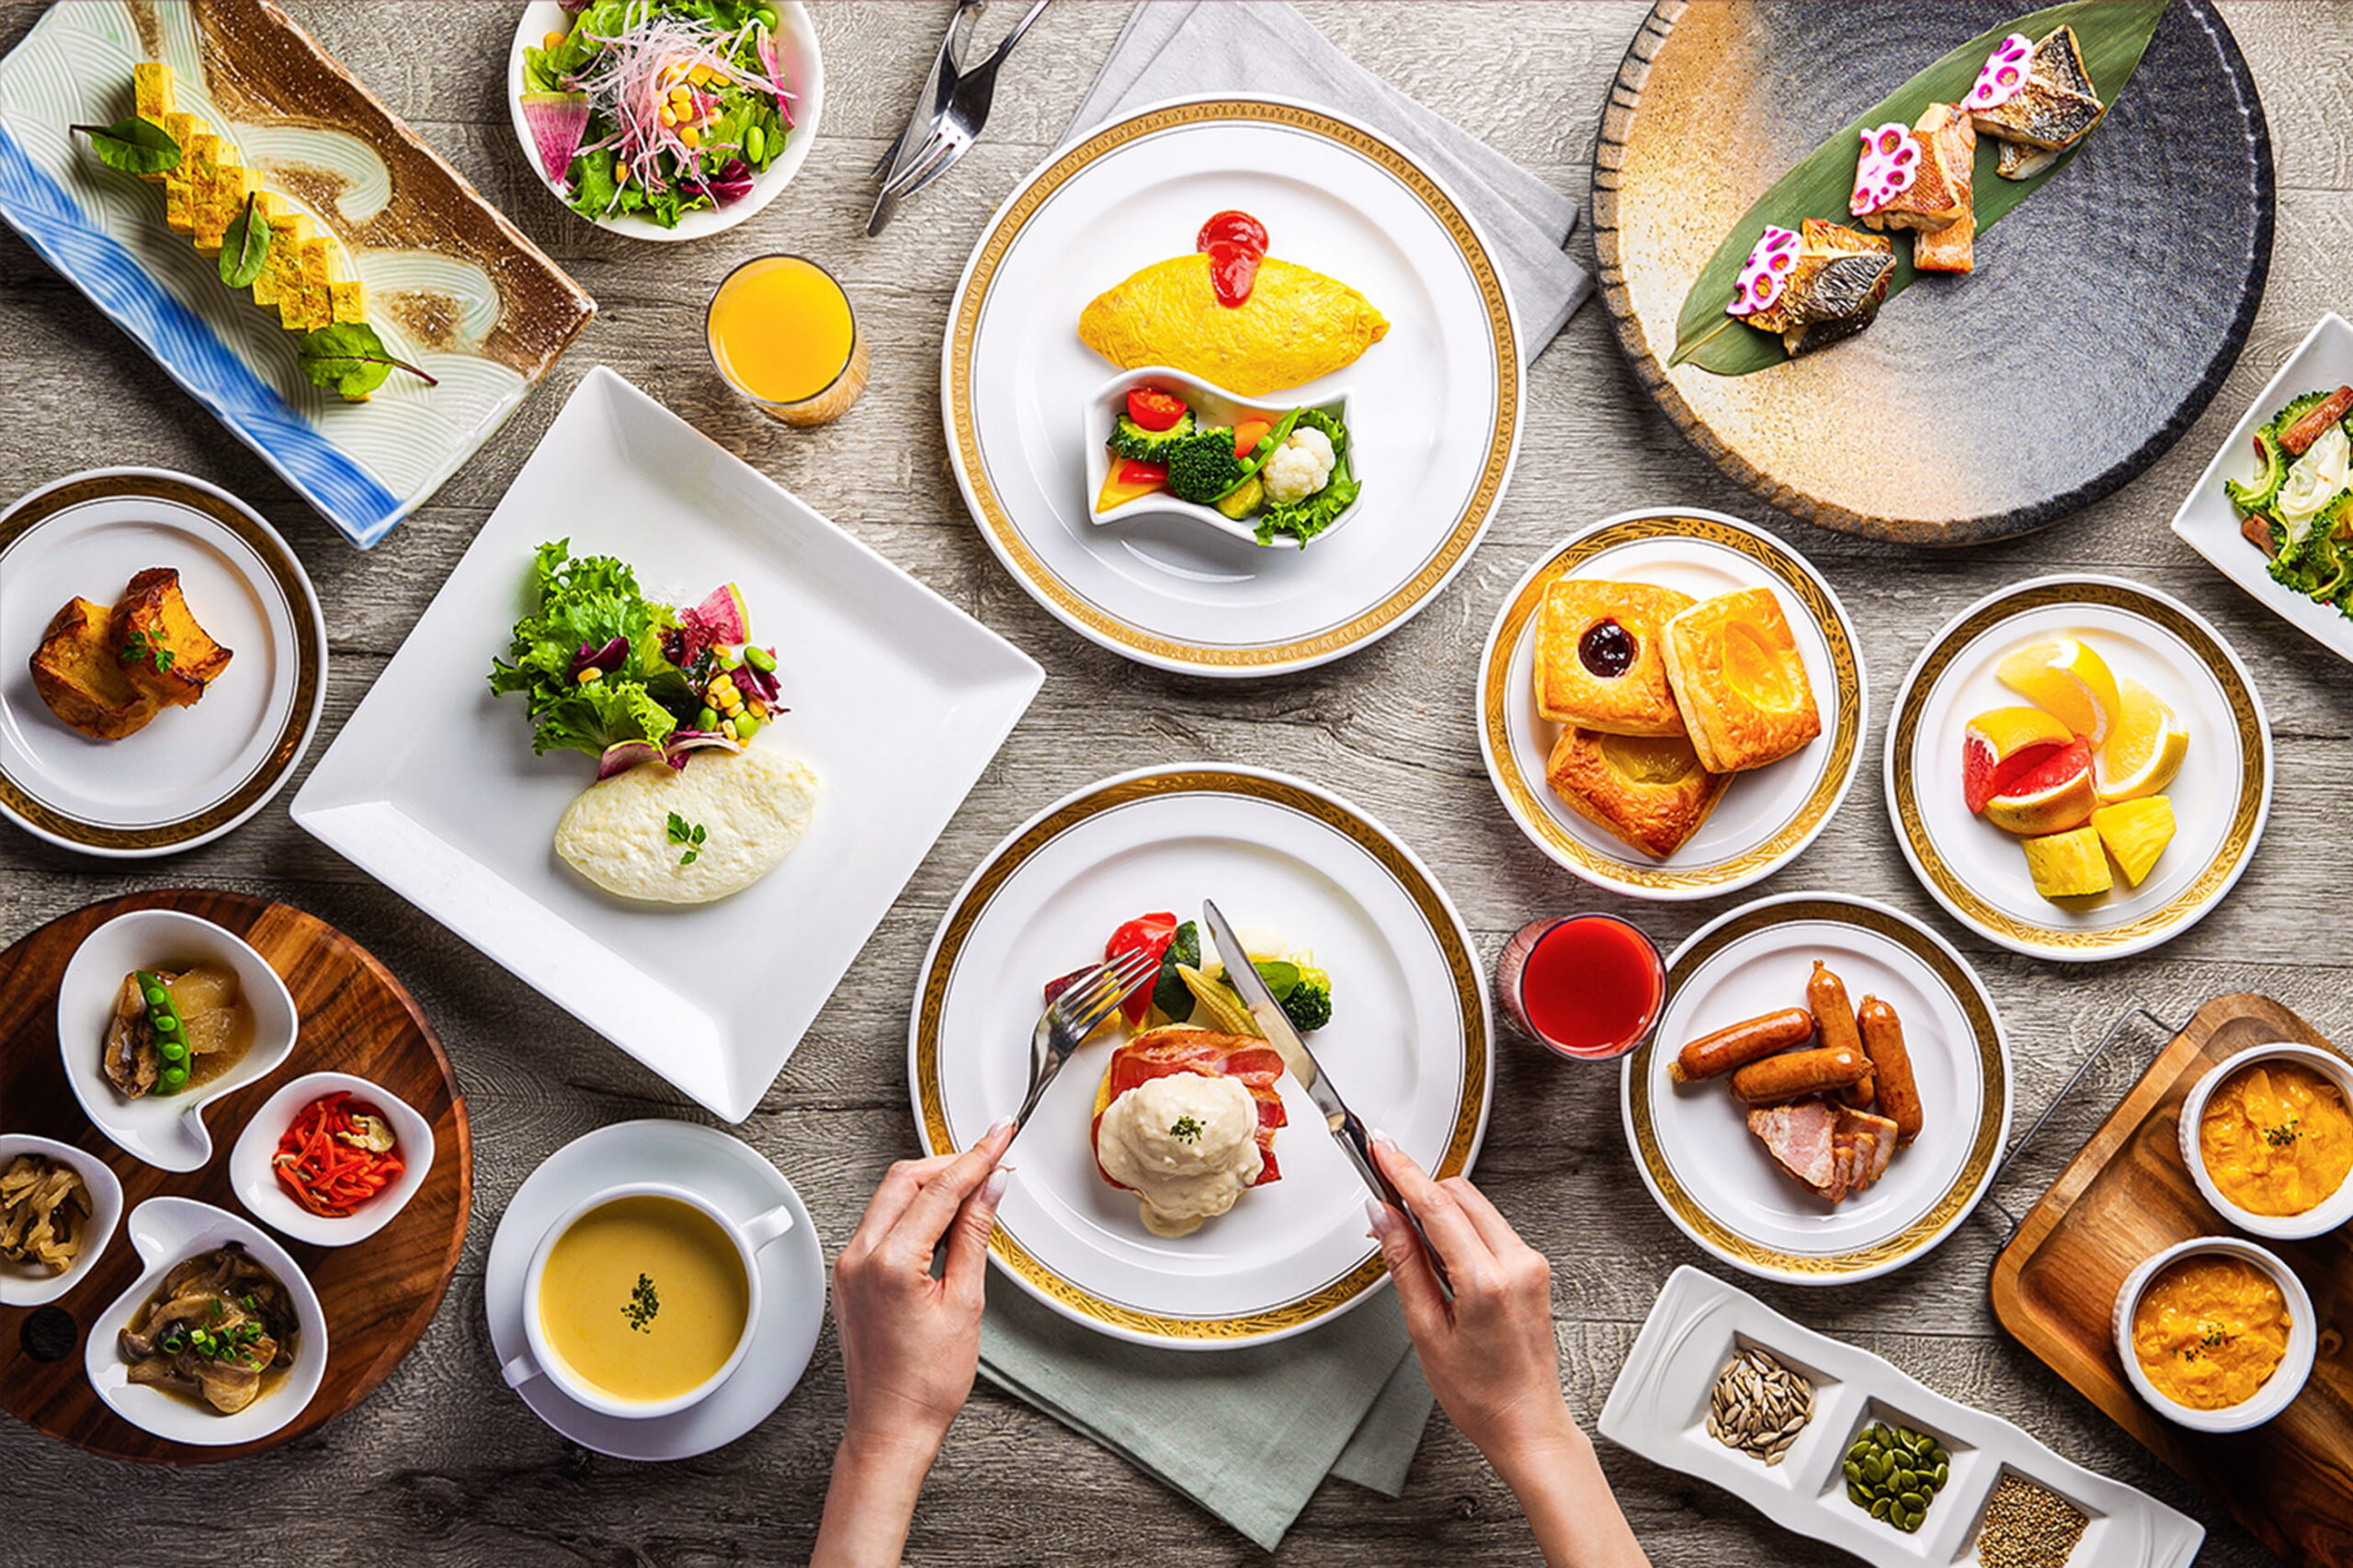   光あふれるレストラン、沖縄の朝を彩る華やかな朝食ブッフェのイメージ画像